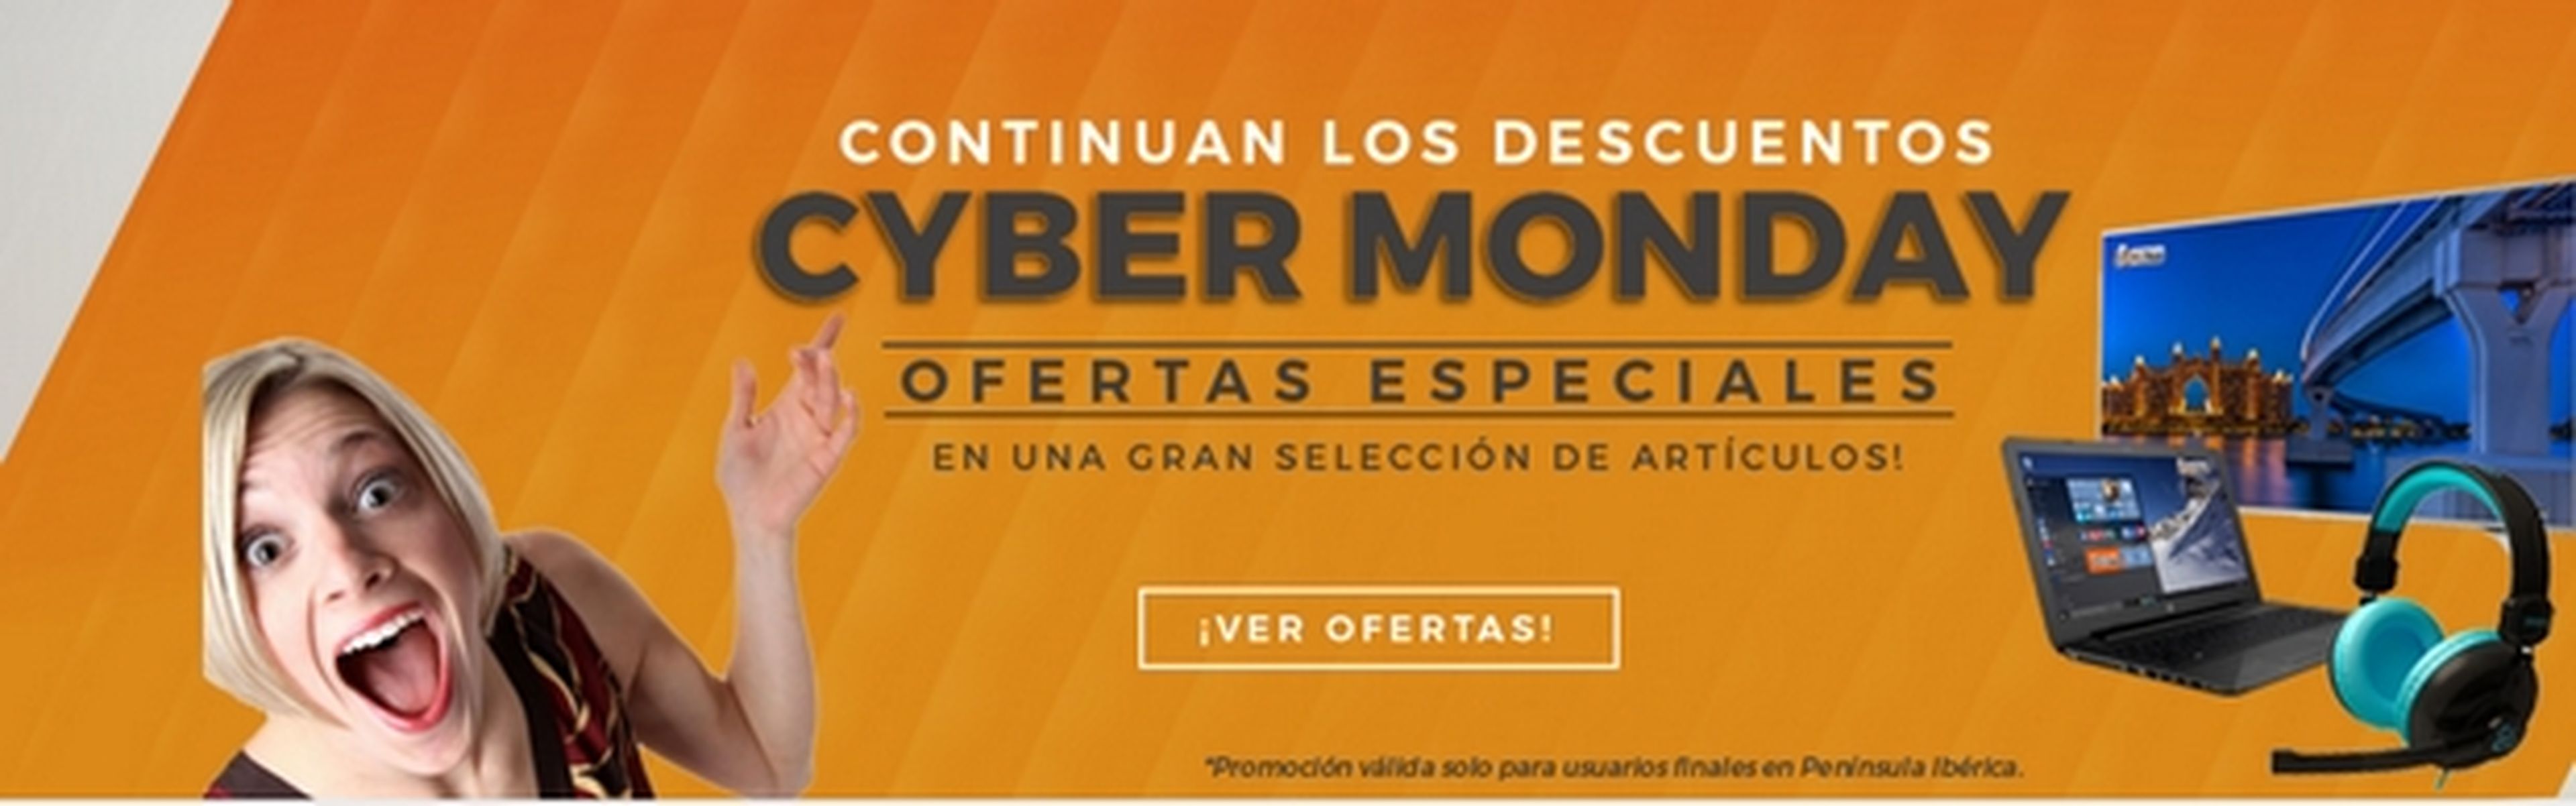 Cyber Monday 2016: todas las ofertas y descuentos de las tiendas